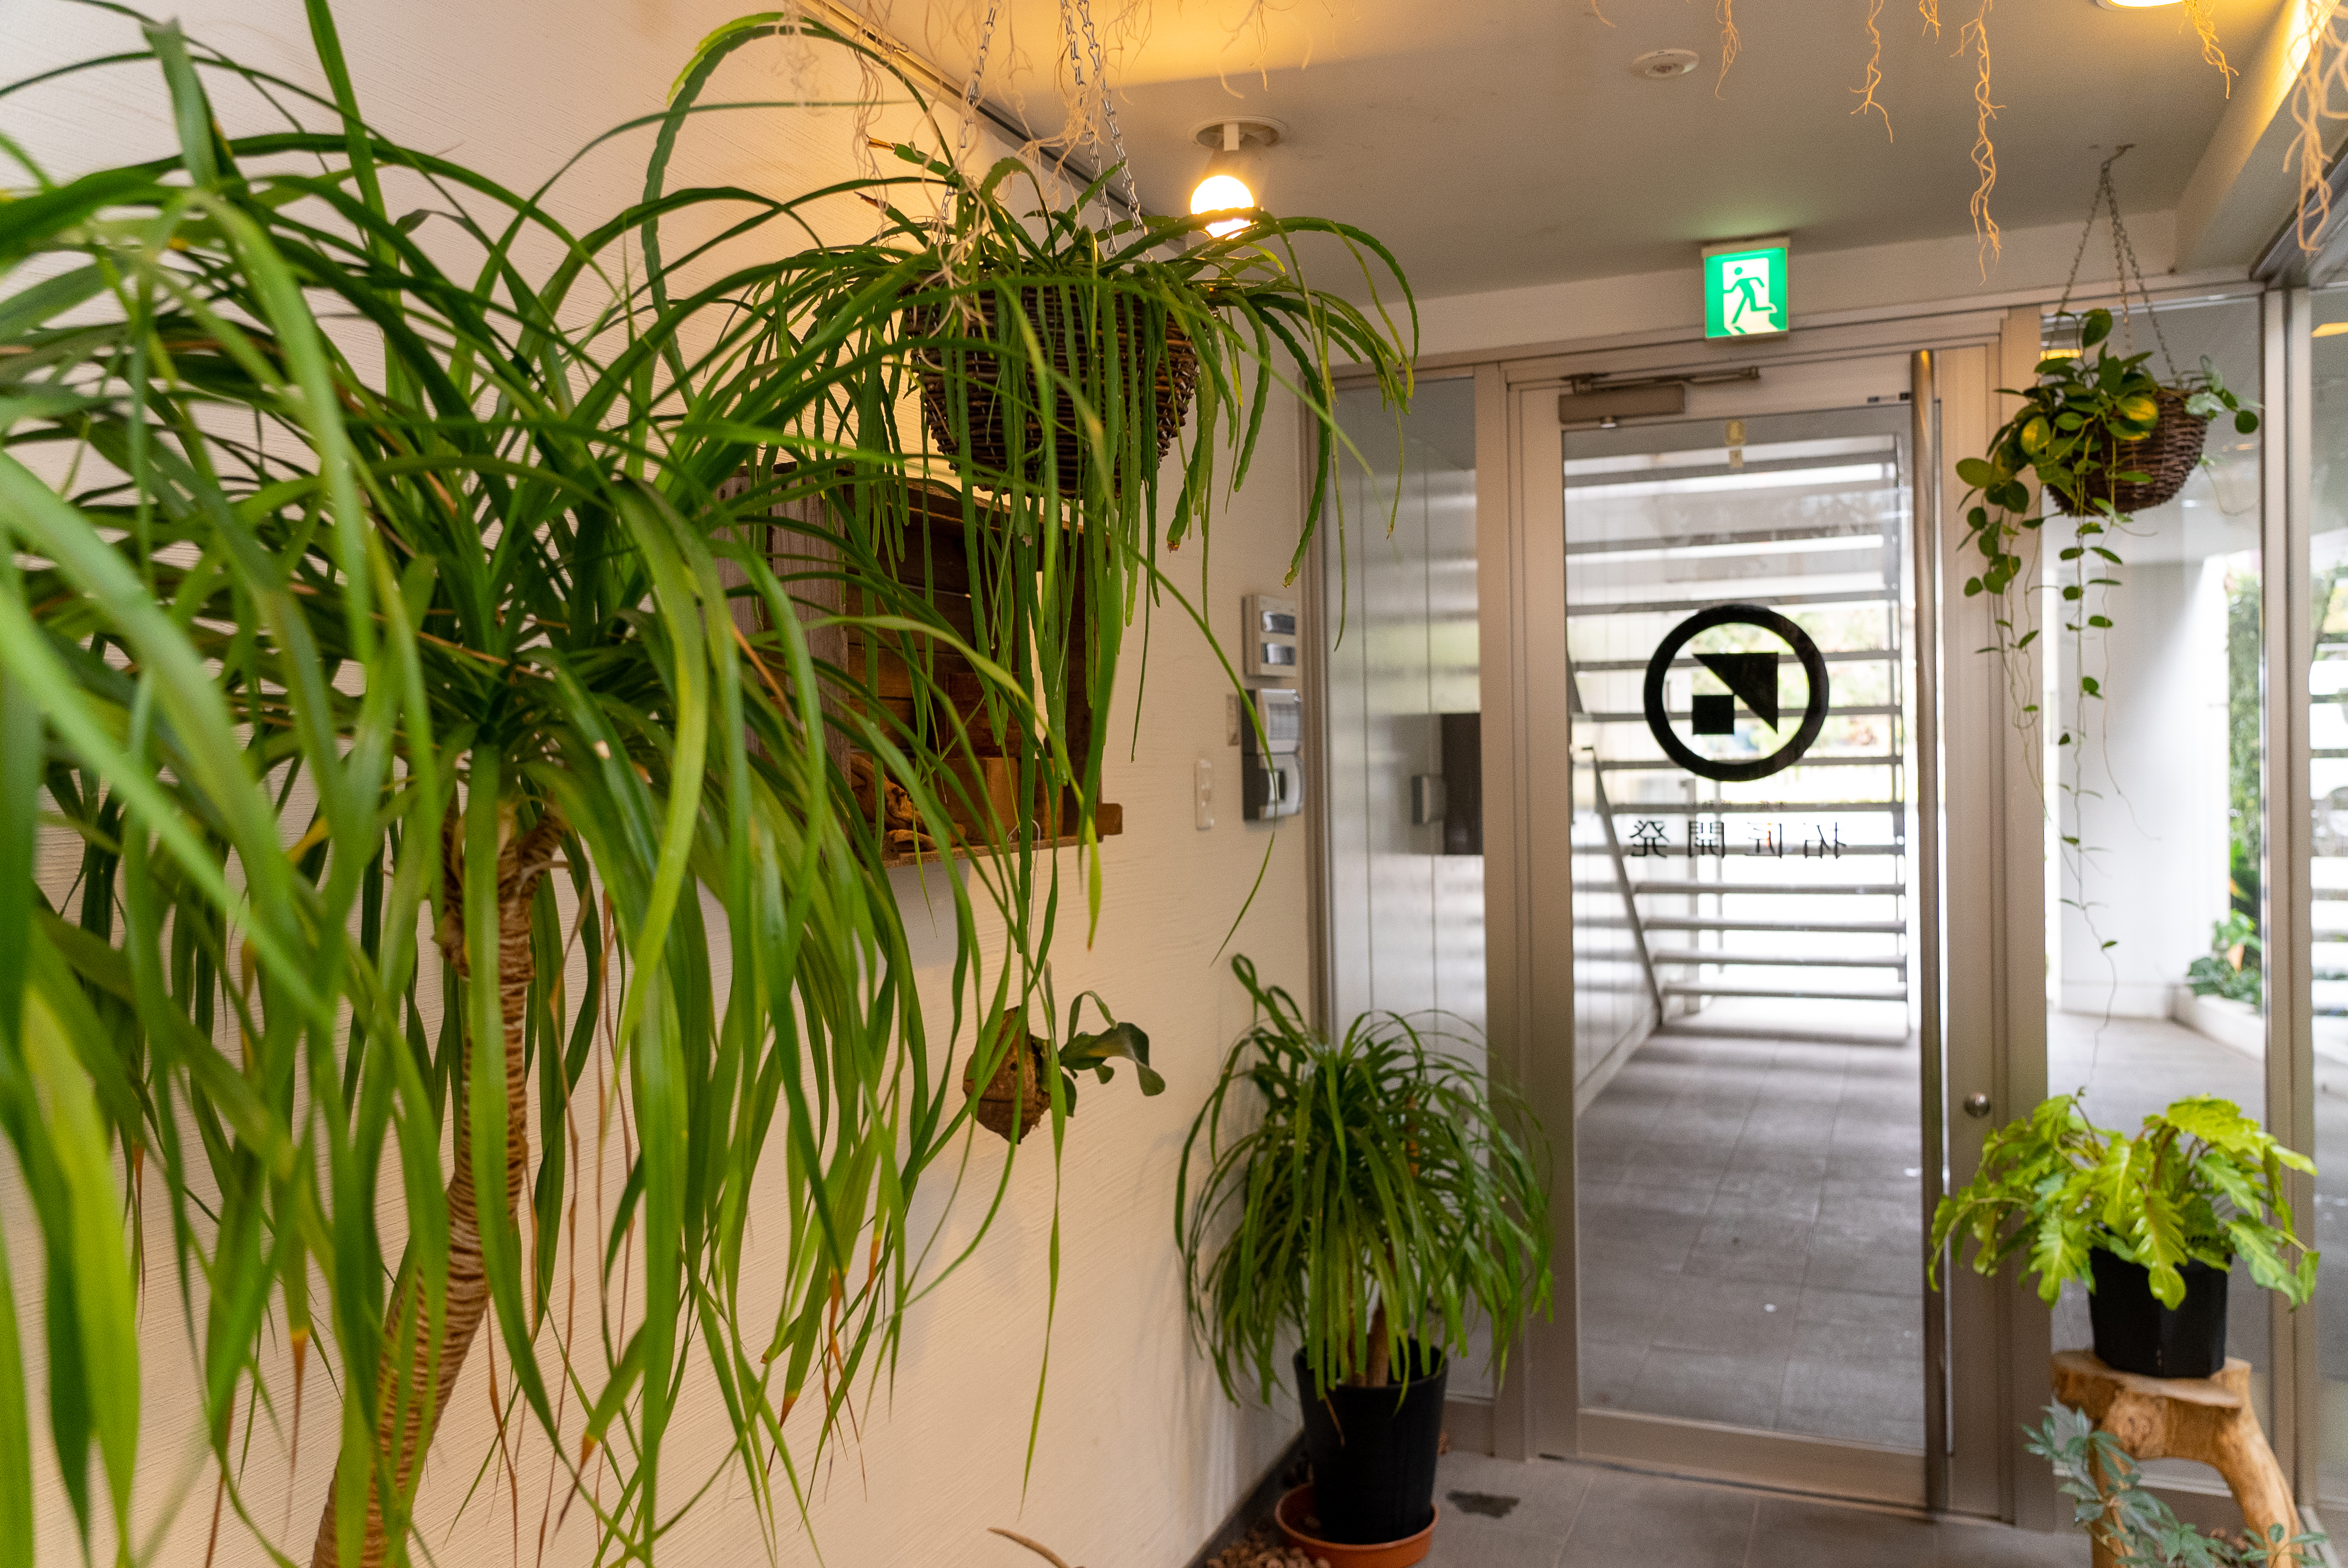 グッドデザイン賞を受賞するデベロッパーだけに、オフィス空間にも観葉植物が置かれていて、オシャレな雰囲気だ。